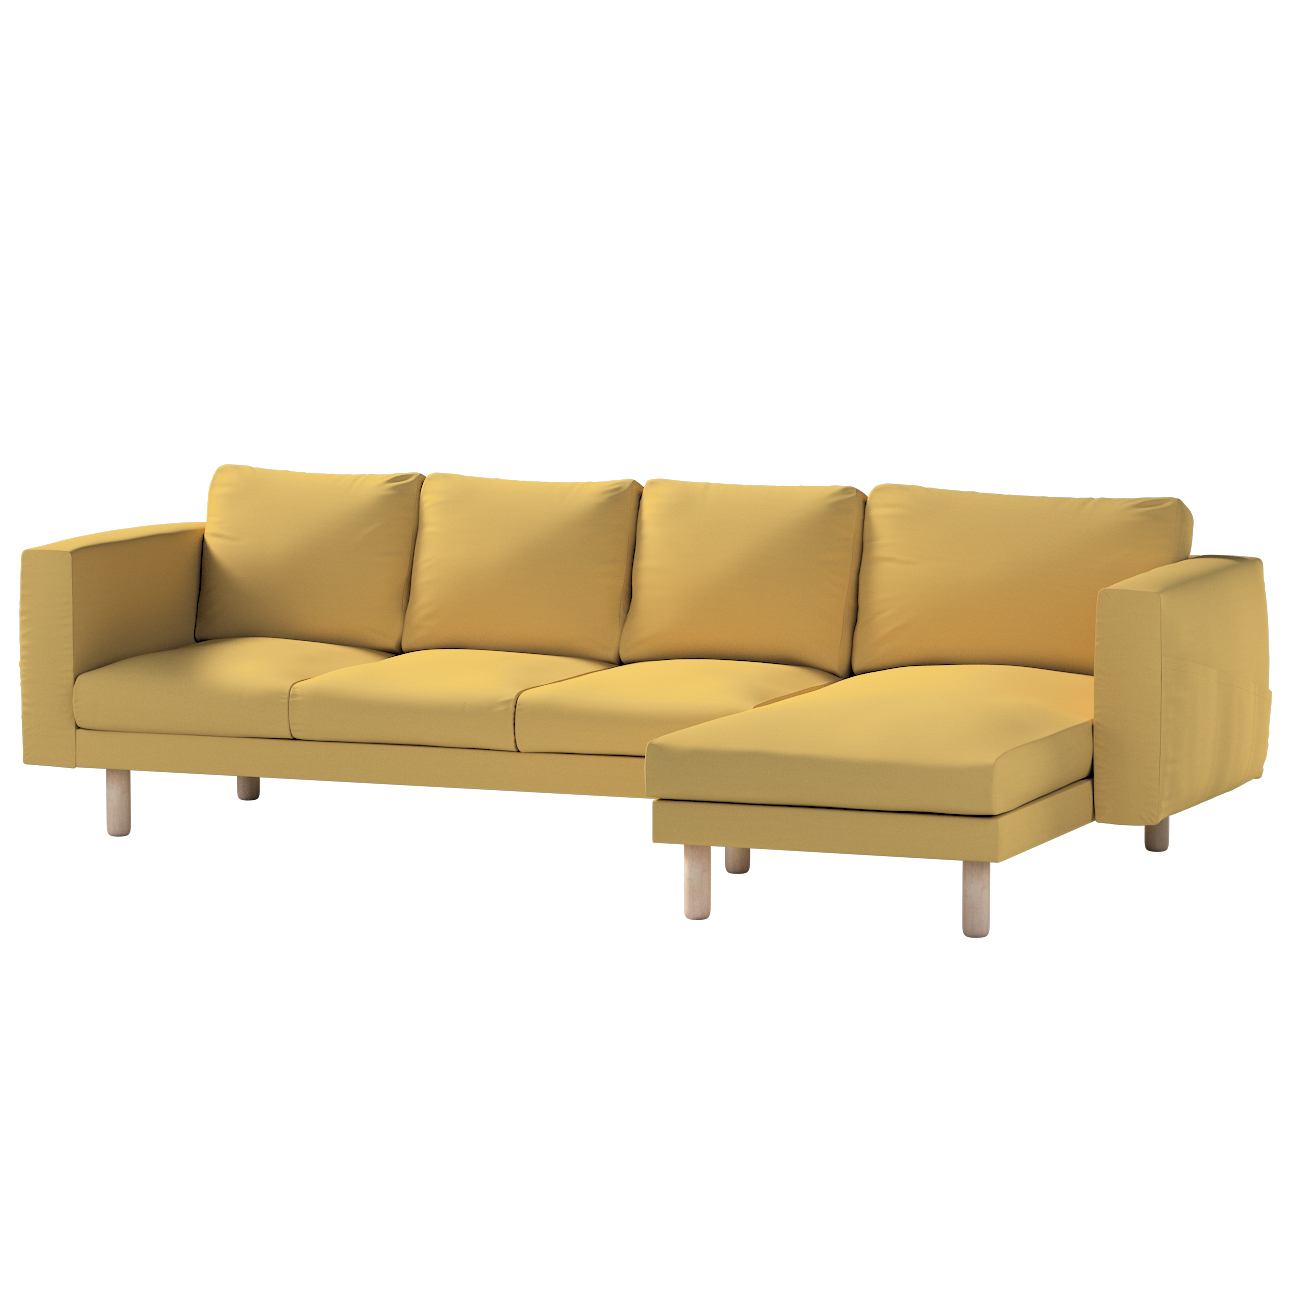 Bezug für Norsborg 4-Sitzer Sofa mit Recamiere, chiffongelb, Norsborg Bezug günstig online kaufen